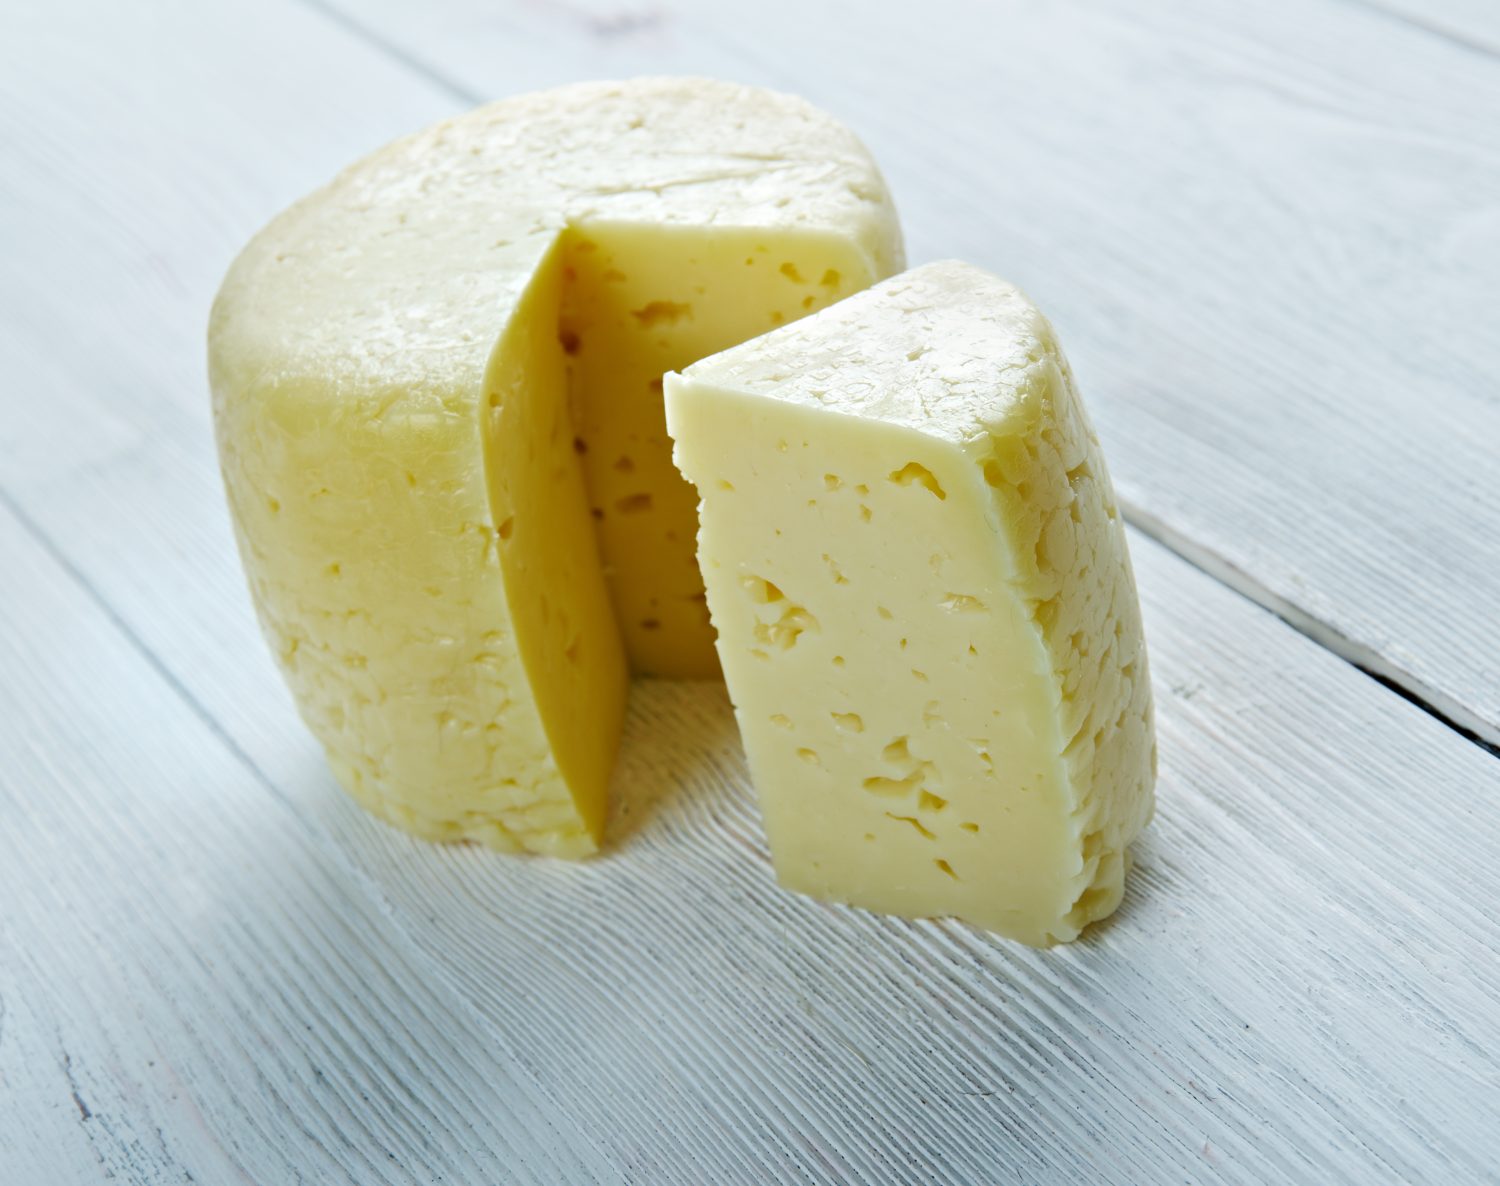 Jibneh Arabieh - formaggio bianco a pasta molle trovato in tutto il Medio Oriente, popolare in Egitto e nell'area del Golfo Persico.